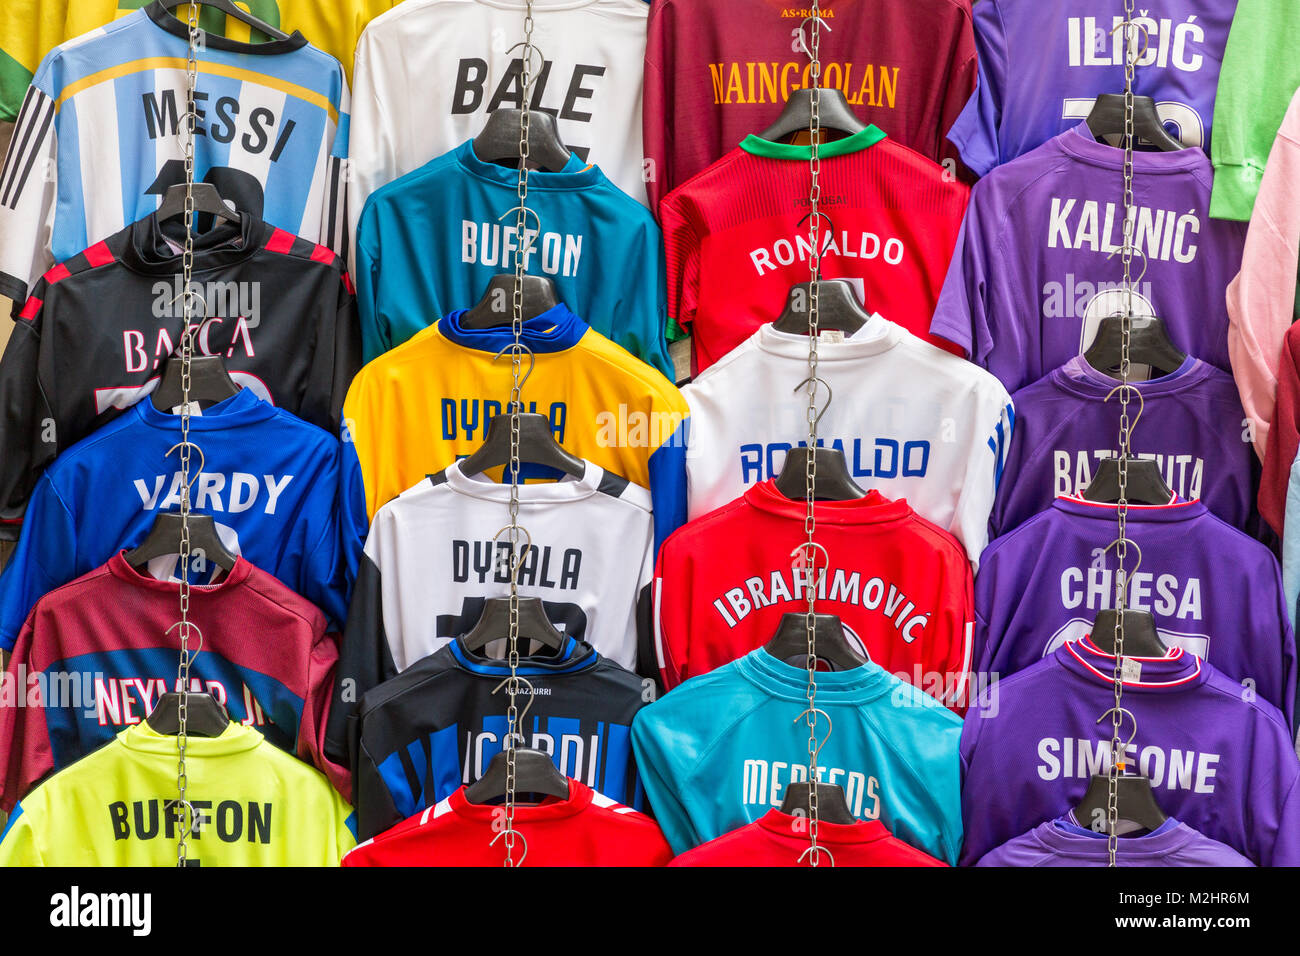 Maglie da calcio con i nomi dei giocatori di calcio per la vendita in stallo delle vendite, Firenze, Italia Foto Stock